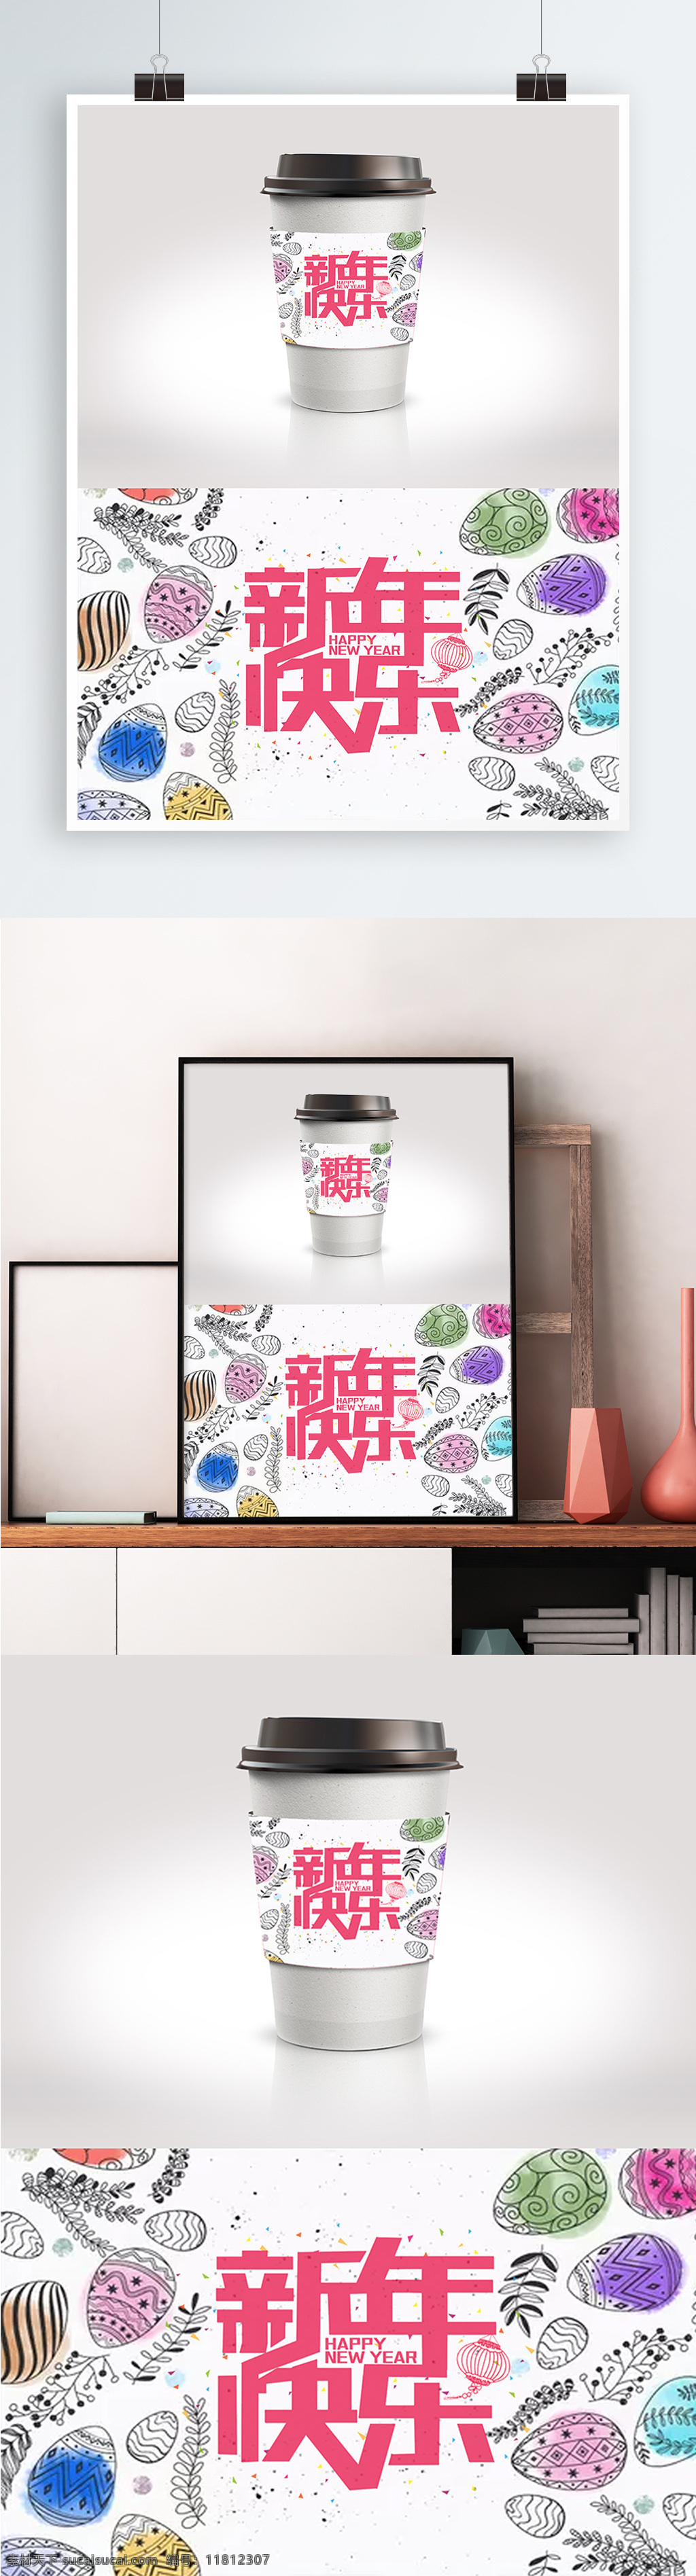 图案 背景 新年 快乐 节日 包装 饮品 杯 套 2018年 psd素材 节日包装 咖啡杯套 模版 新年快乐 装饰图案 字体设计